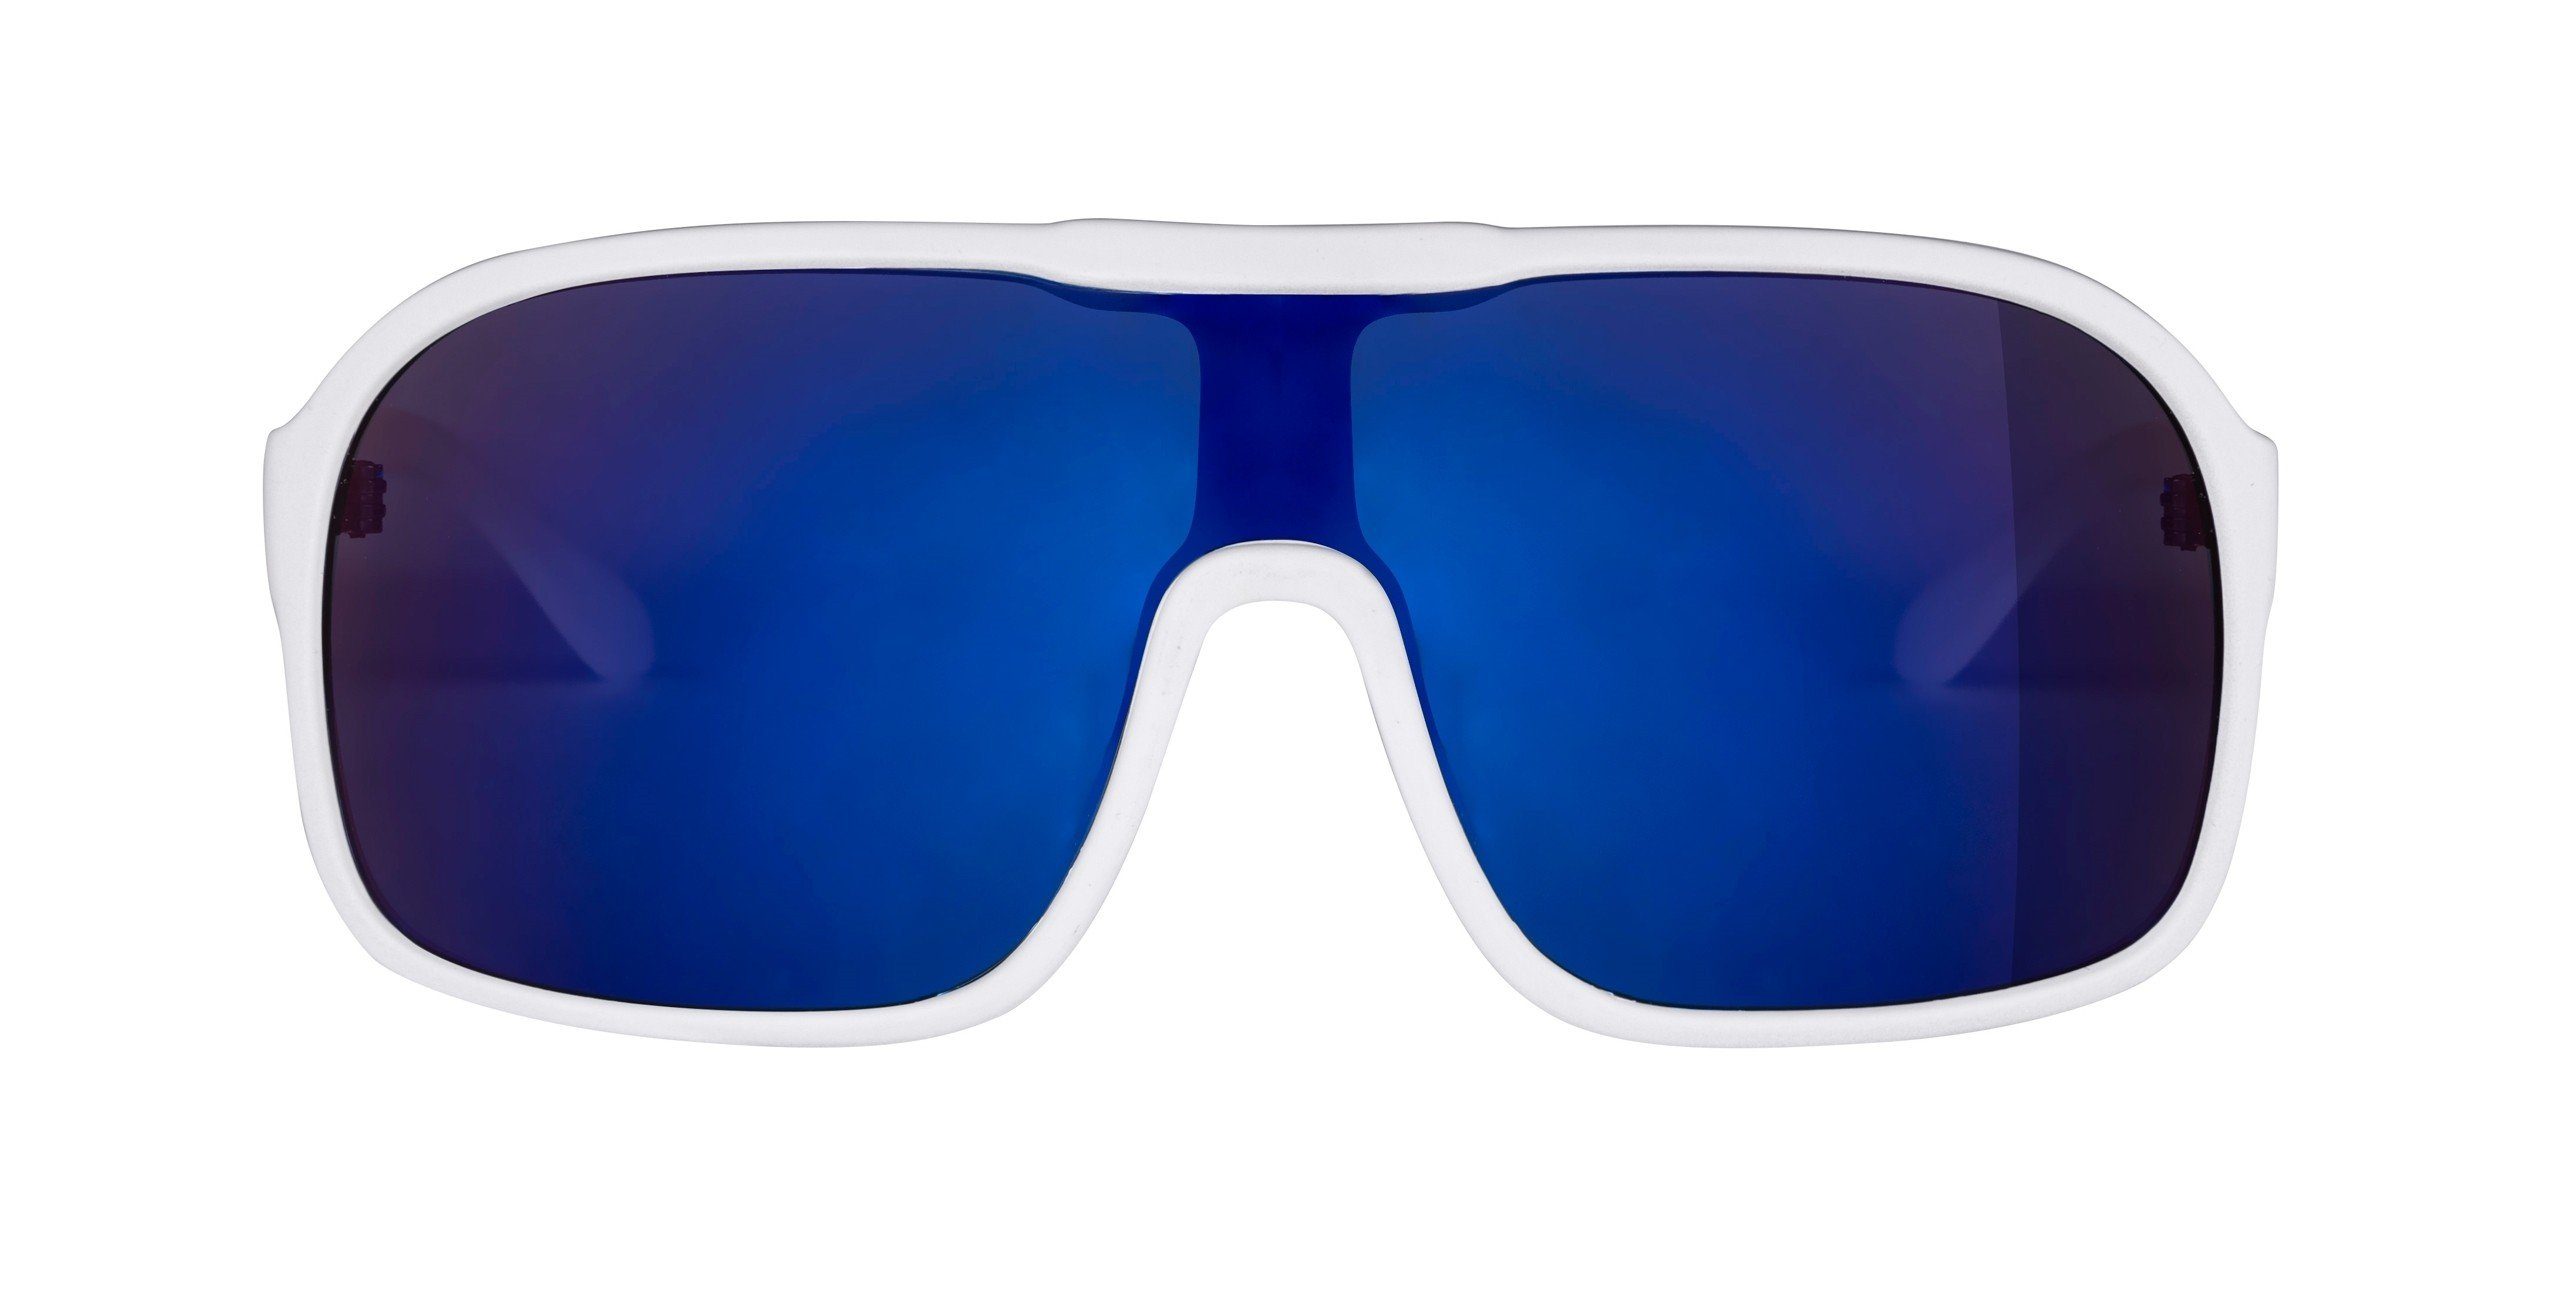 FORCE FORCE Fahrradbrille matt-weiss Sonnenbrille blaue Linse MONDO